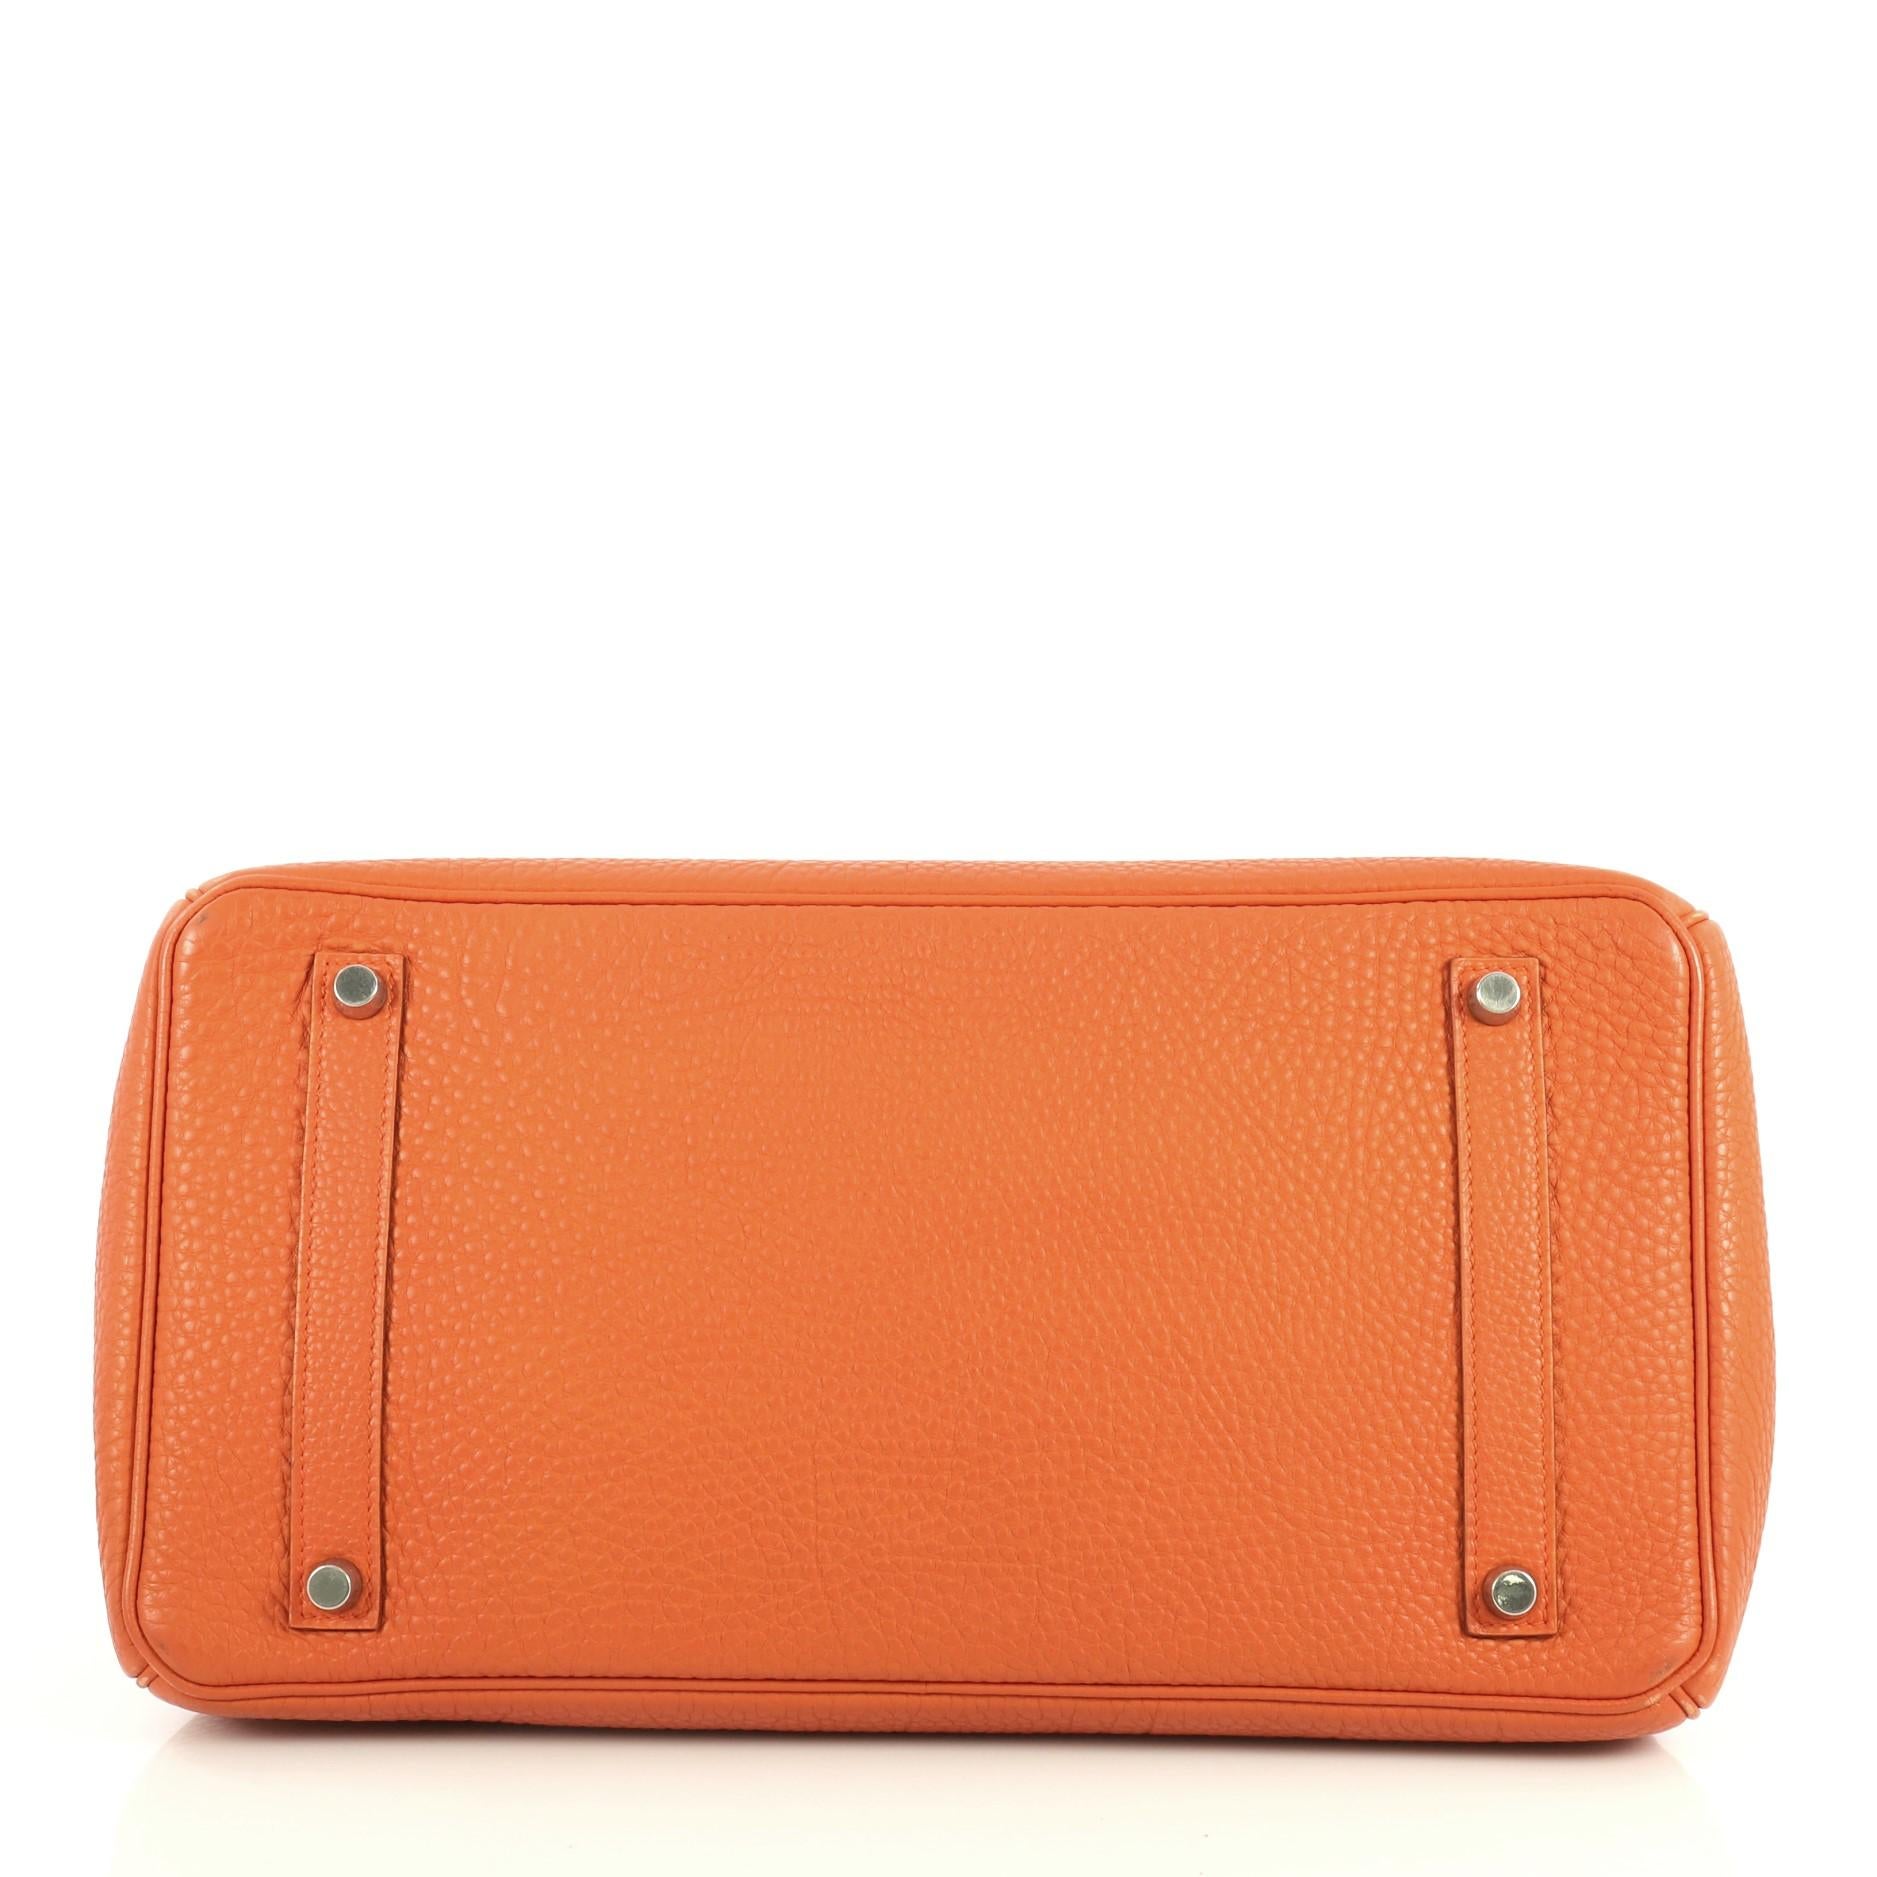 Hermes Birkin Handbag Orange H Togo with Palladium Hardware 35 1